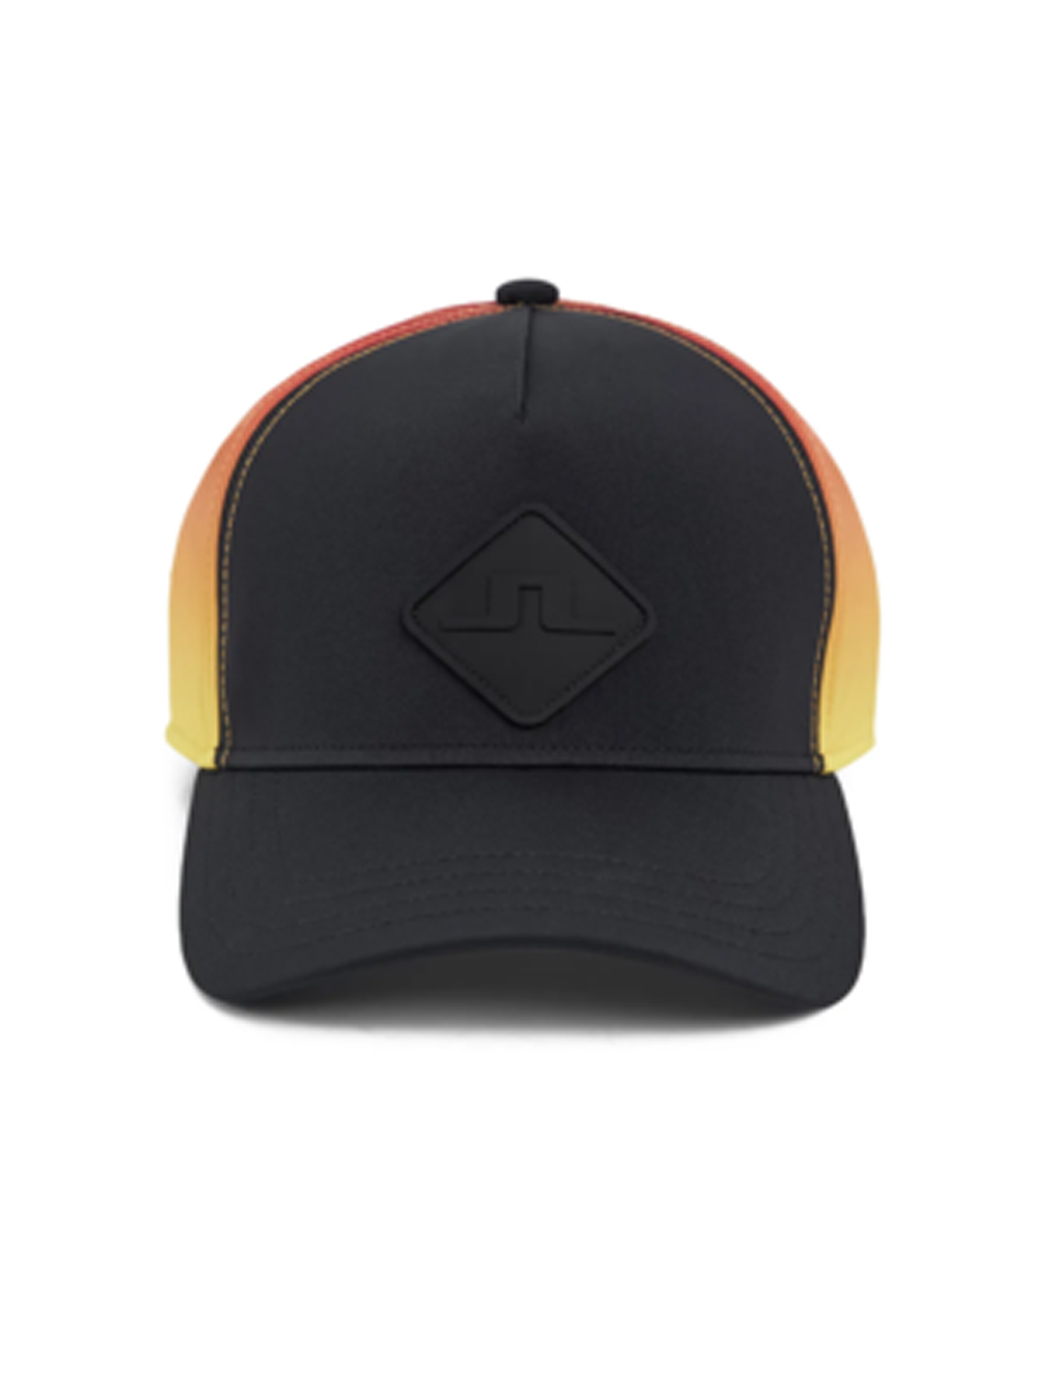 제이린드버그 SS23 남성 골프 모자 나탄 캡 모자 (러셋 오렌지)